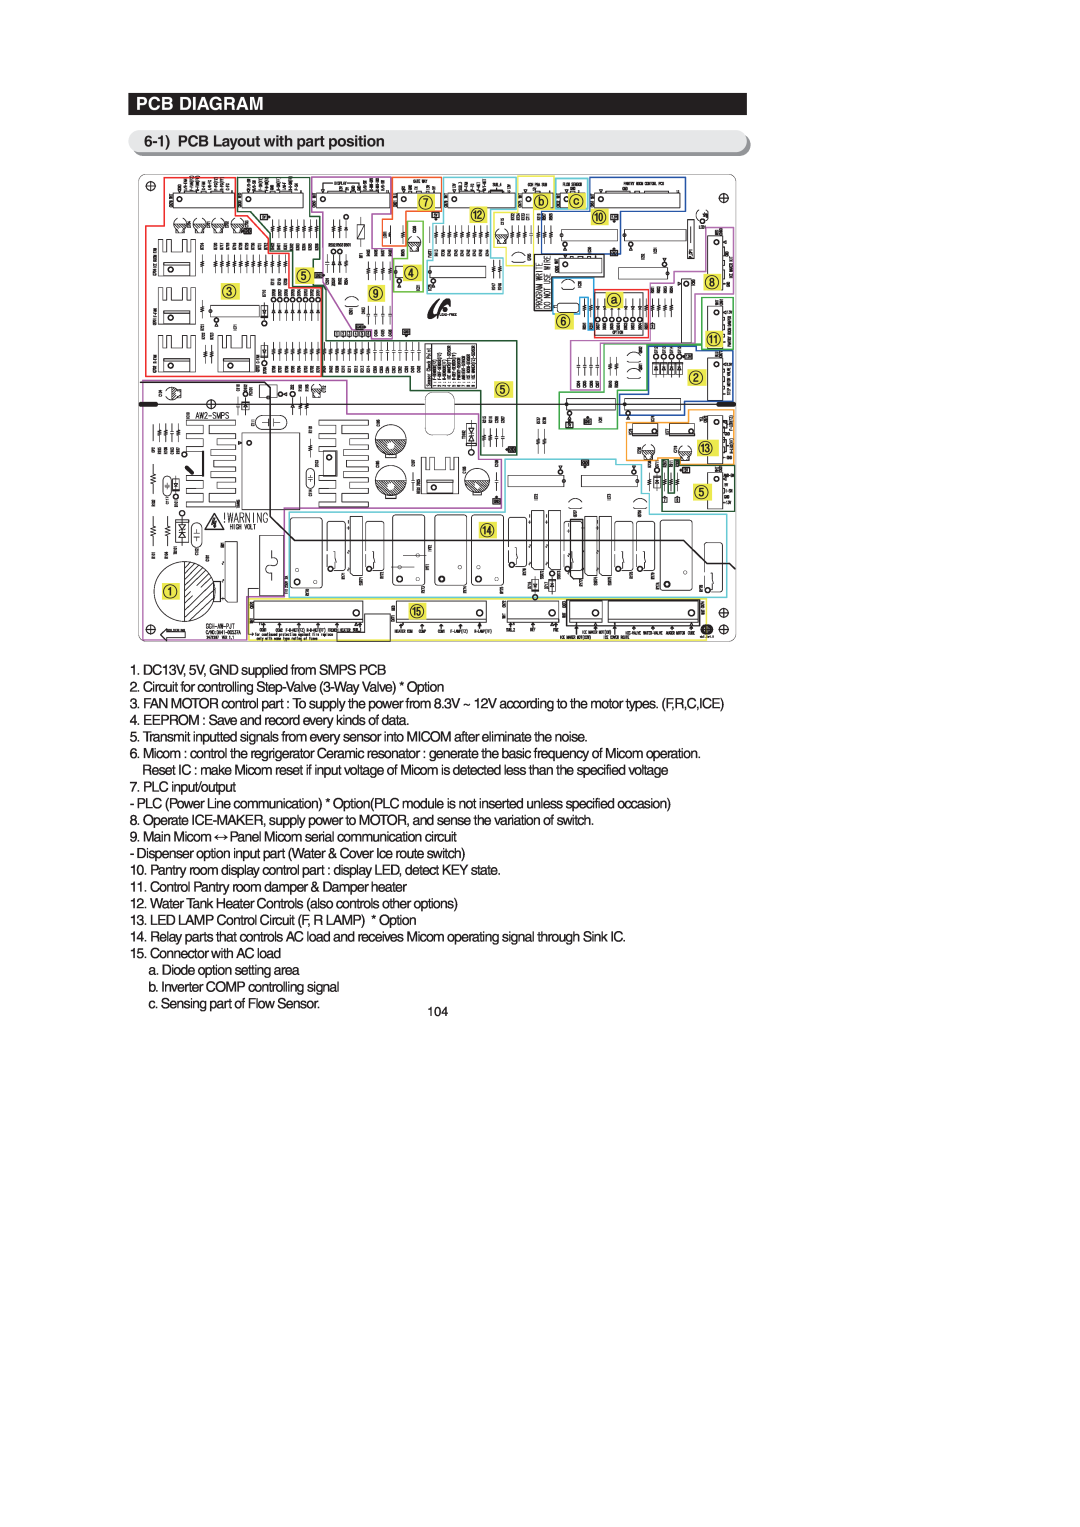 Samsung RF26XAEXAA, RF267AEBP, RF267AE**, RF26XAERS, RF26XAEPN, RF26XAE**, RF267AERS Pcb Diagram, PCB Layout with part position 